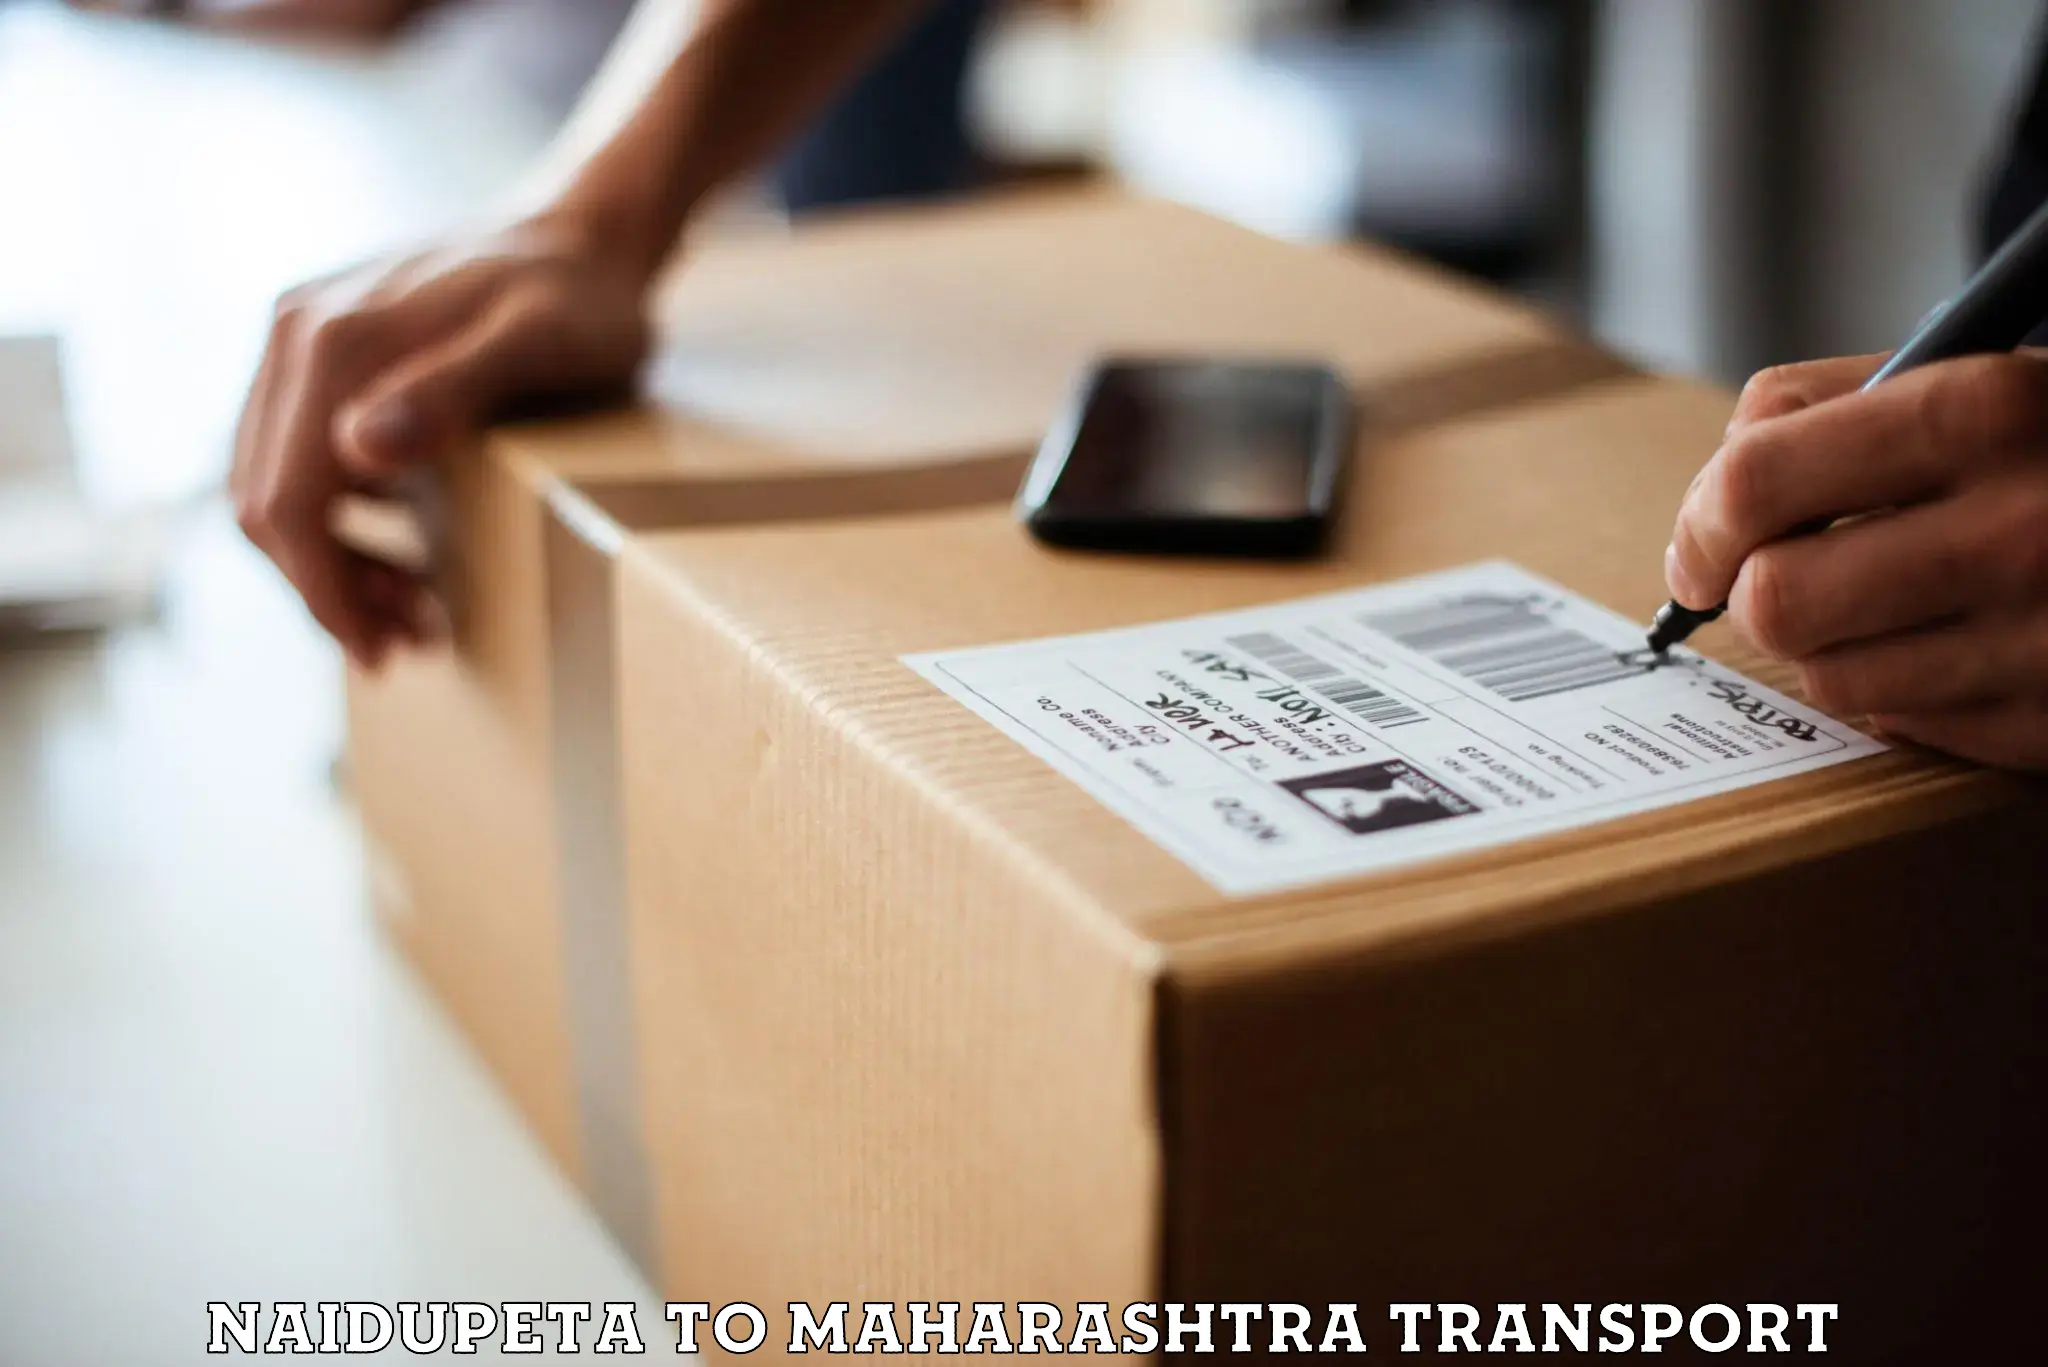 Furniture transport service Naidupeta to Ulhasnagar